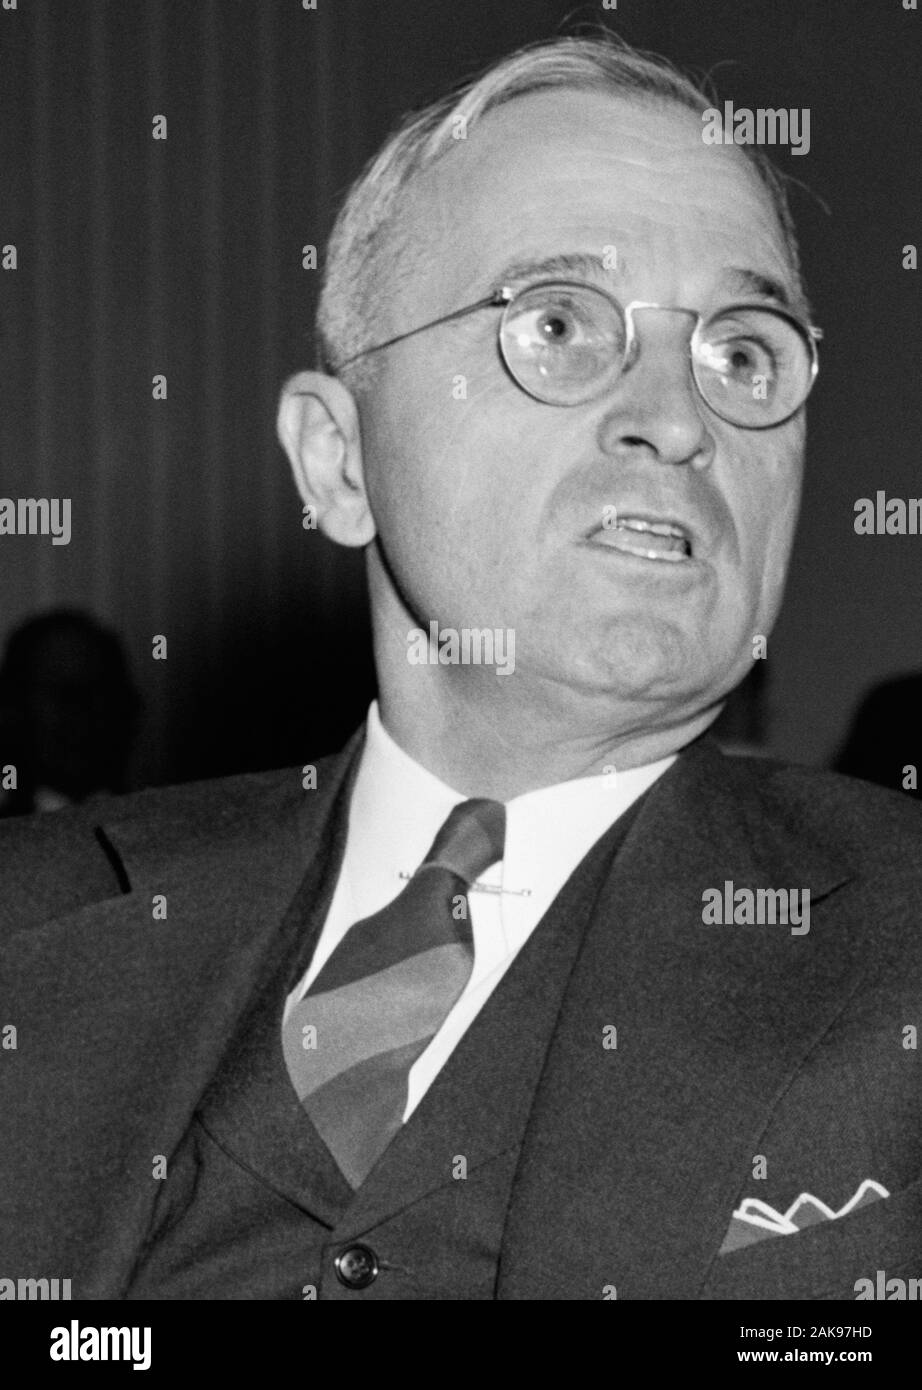 Vintage Foto von Missouri Senator - und künftige Präsident Harry S Truman in einer Rede auf dem Kapitol in Washington DC. Foto von Harris & Ewing am 14. Oktober 1938. Truman (1884-1972) später in der 33., US-Präsident (1945 - 1953). Stockfoto